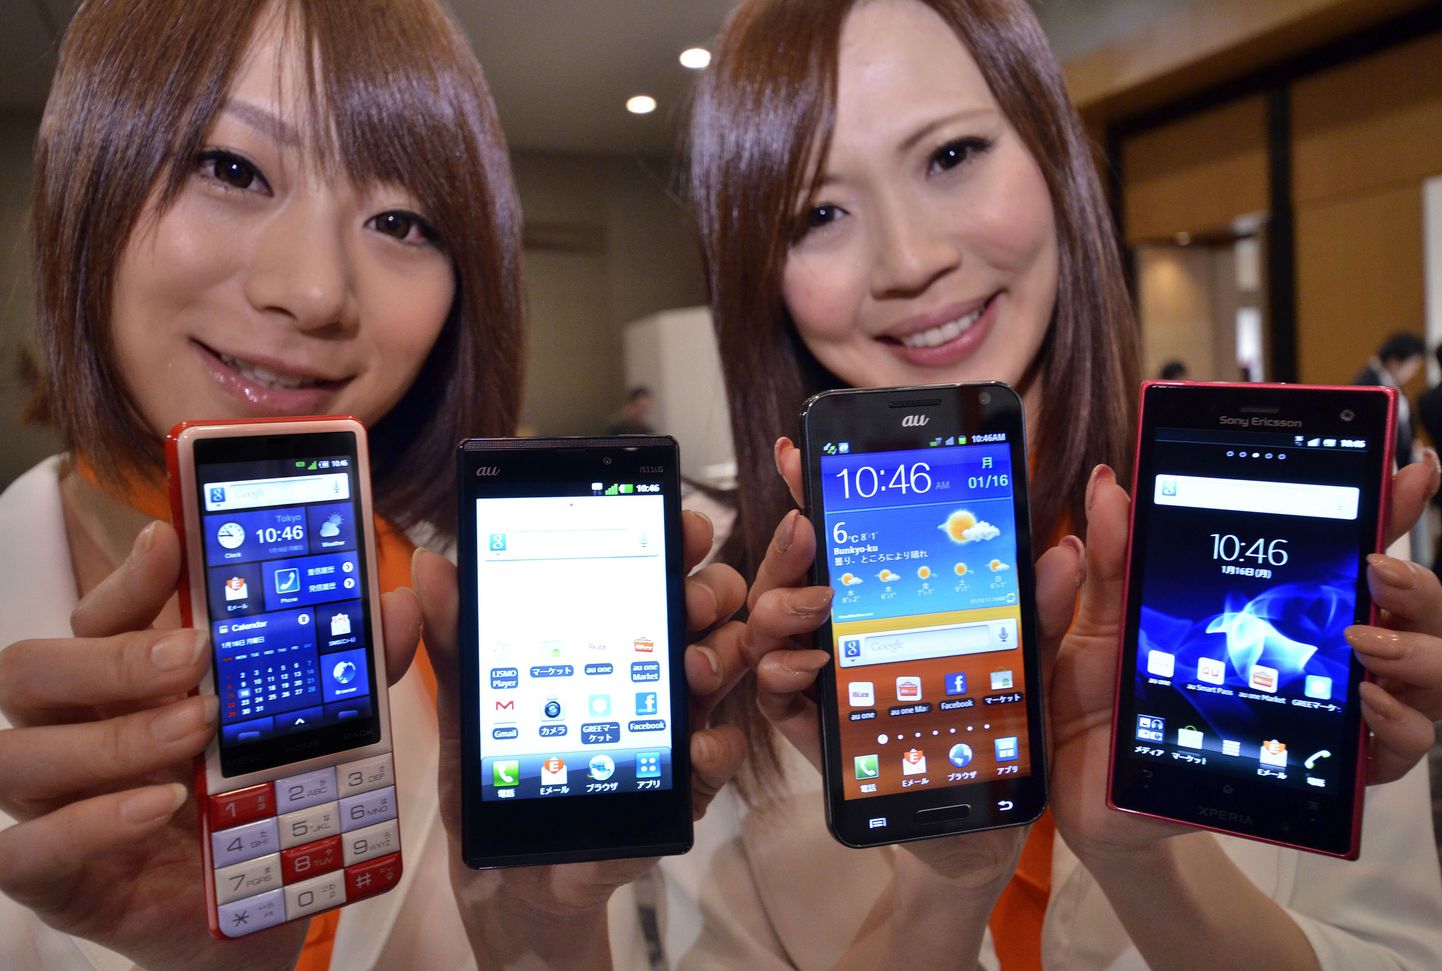 Parempoolsel neiul on käes nutitelefon Sony Ericsson Xperia. Pilt ei ole looga seotud.